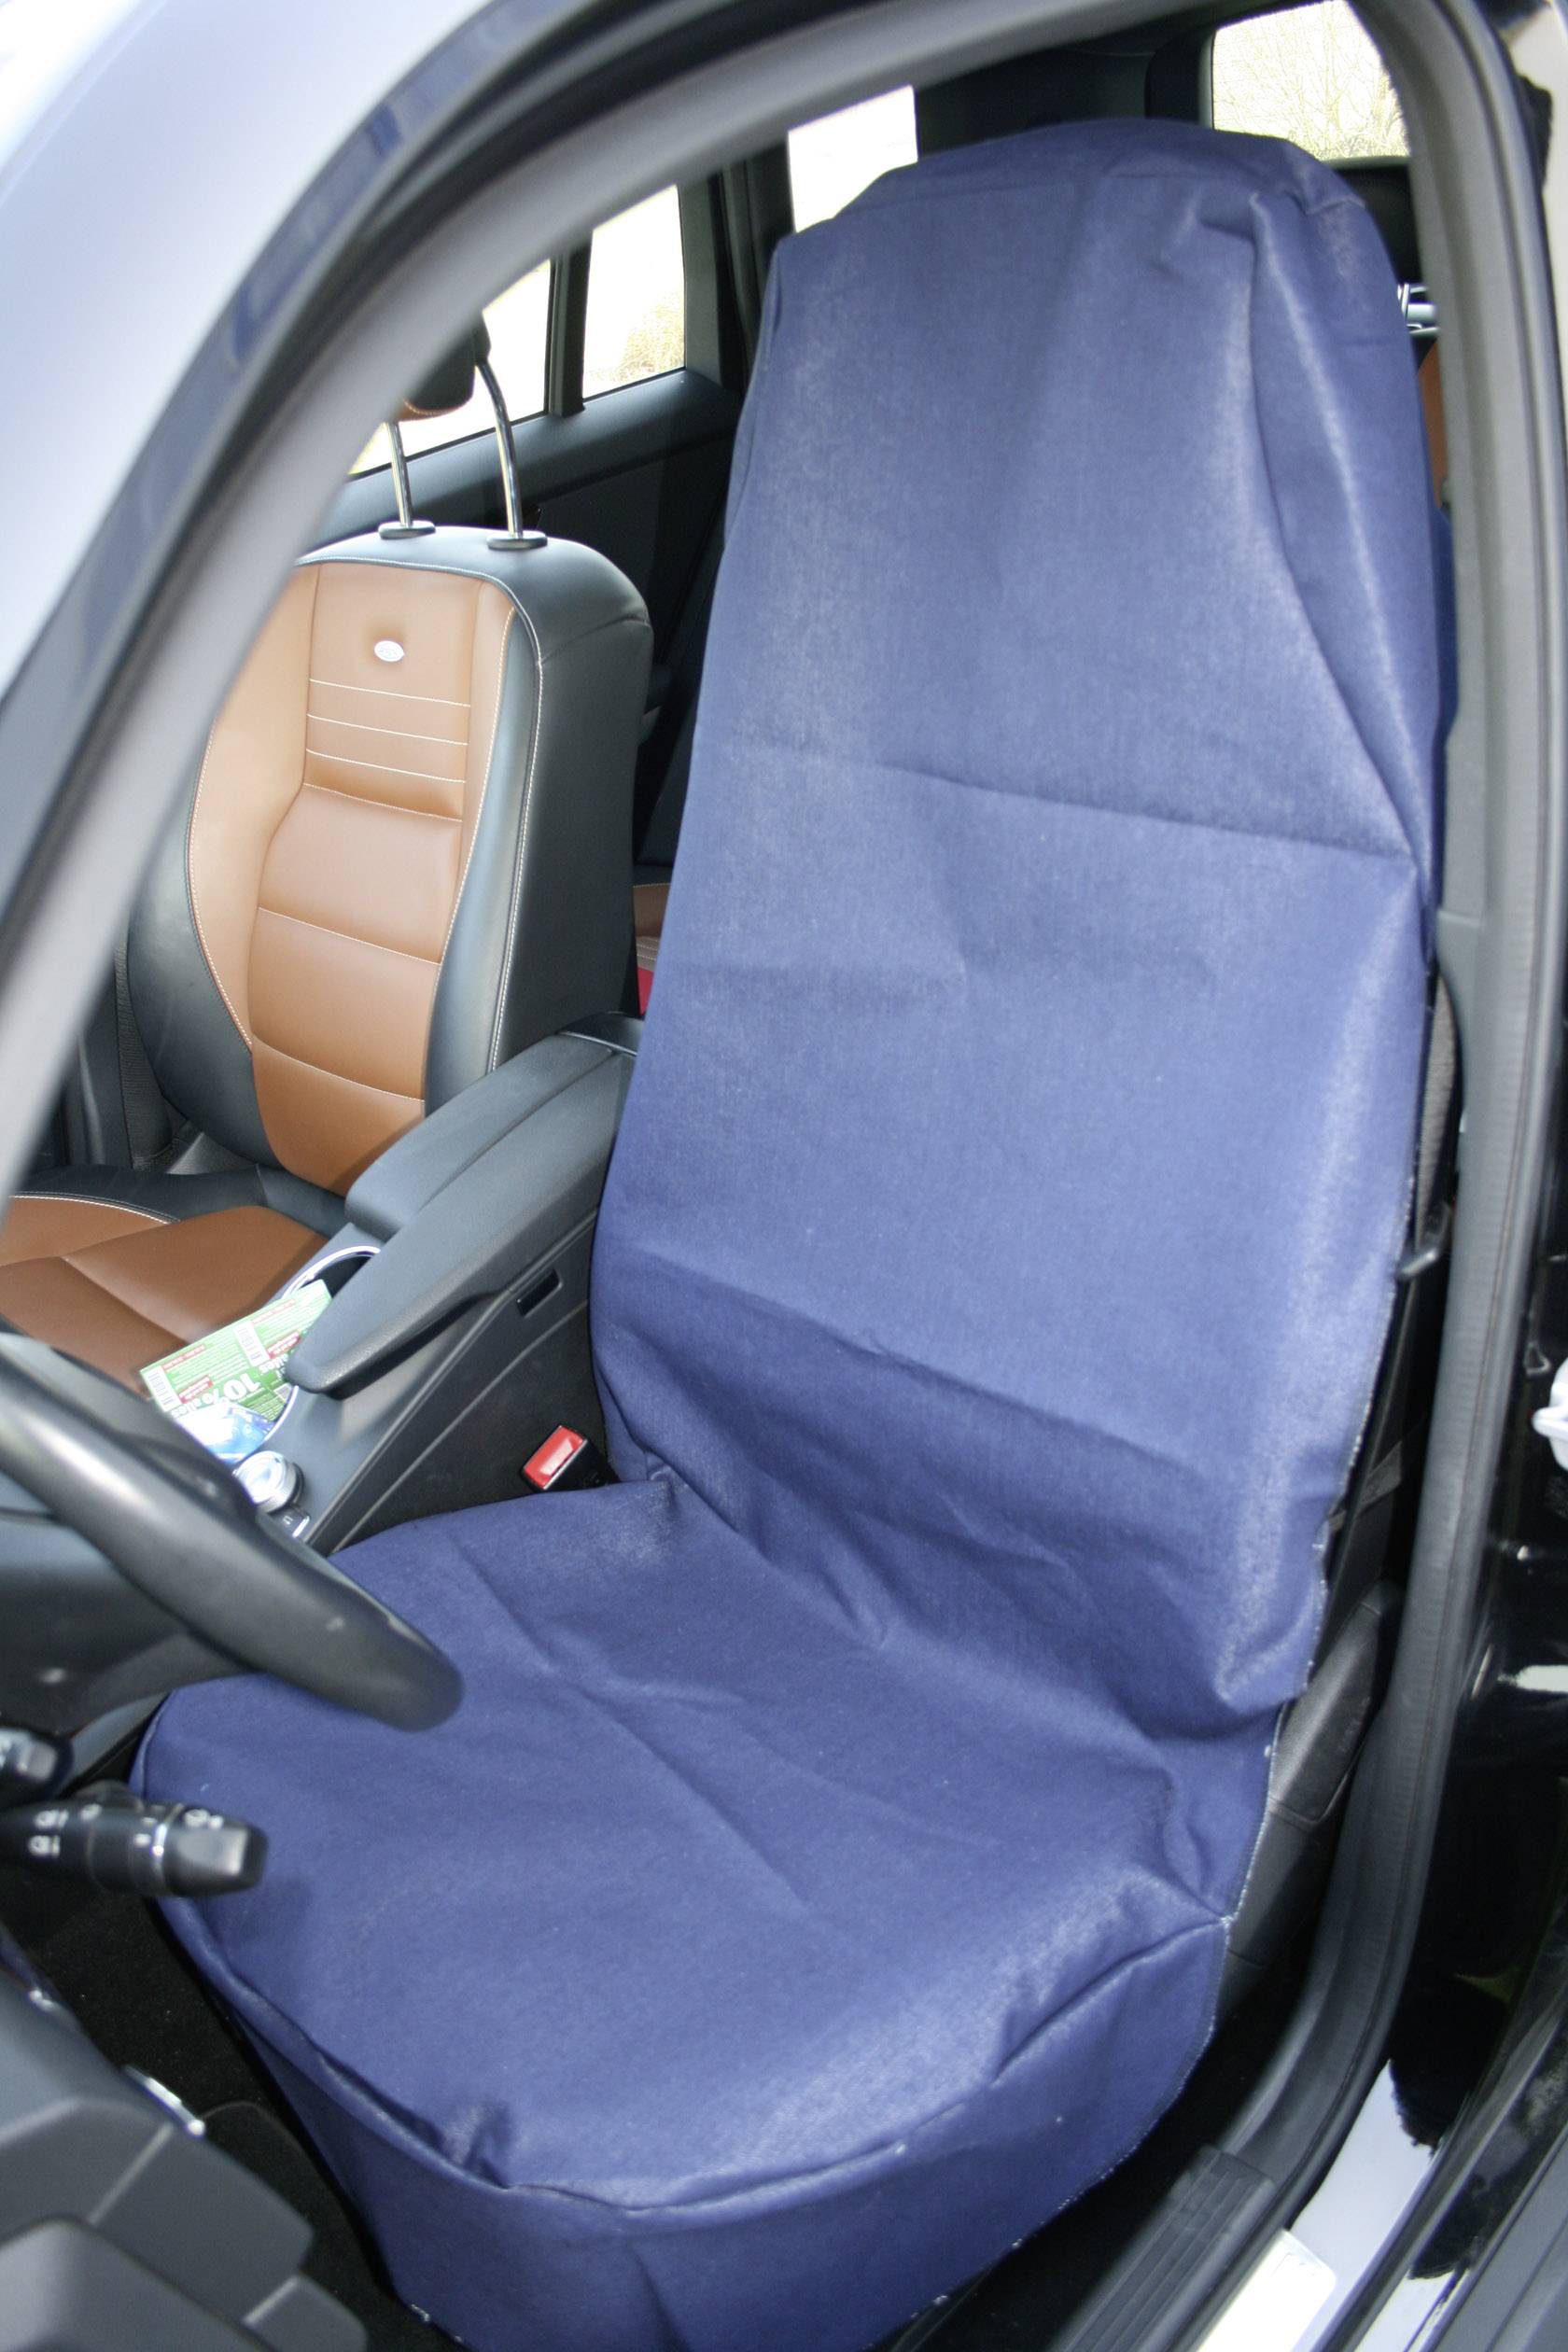 Denim Retro Velvet Fabric Car Seat Cover Blue For Mahindra Scorpio at Rs  22090.00 | Noida| ID: 2852373989462